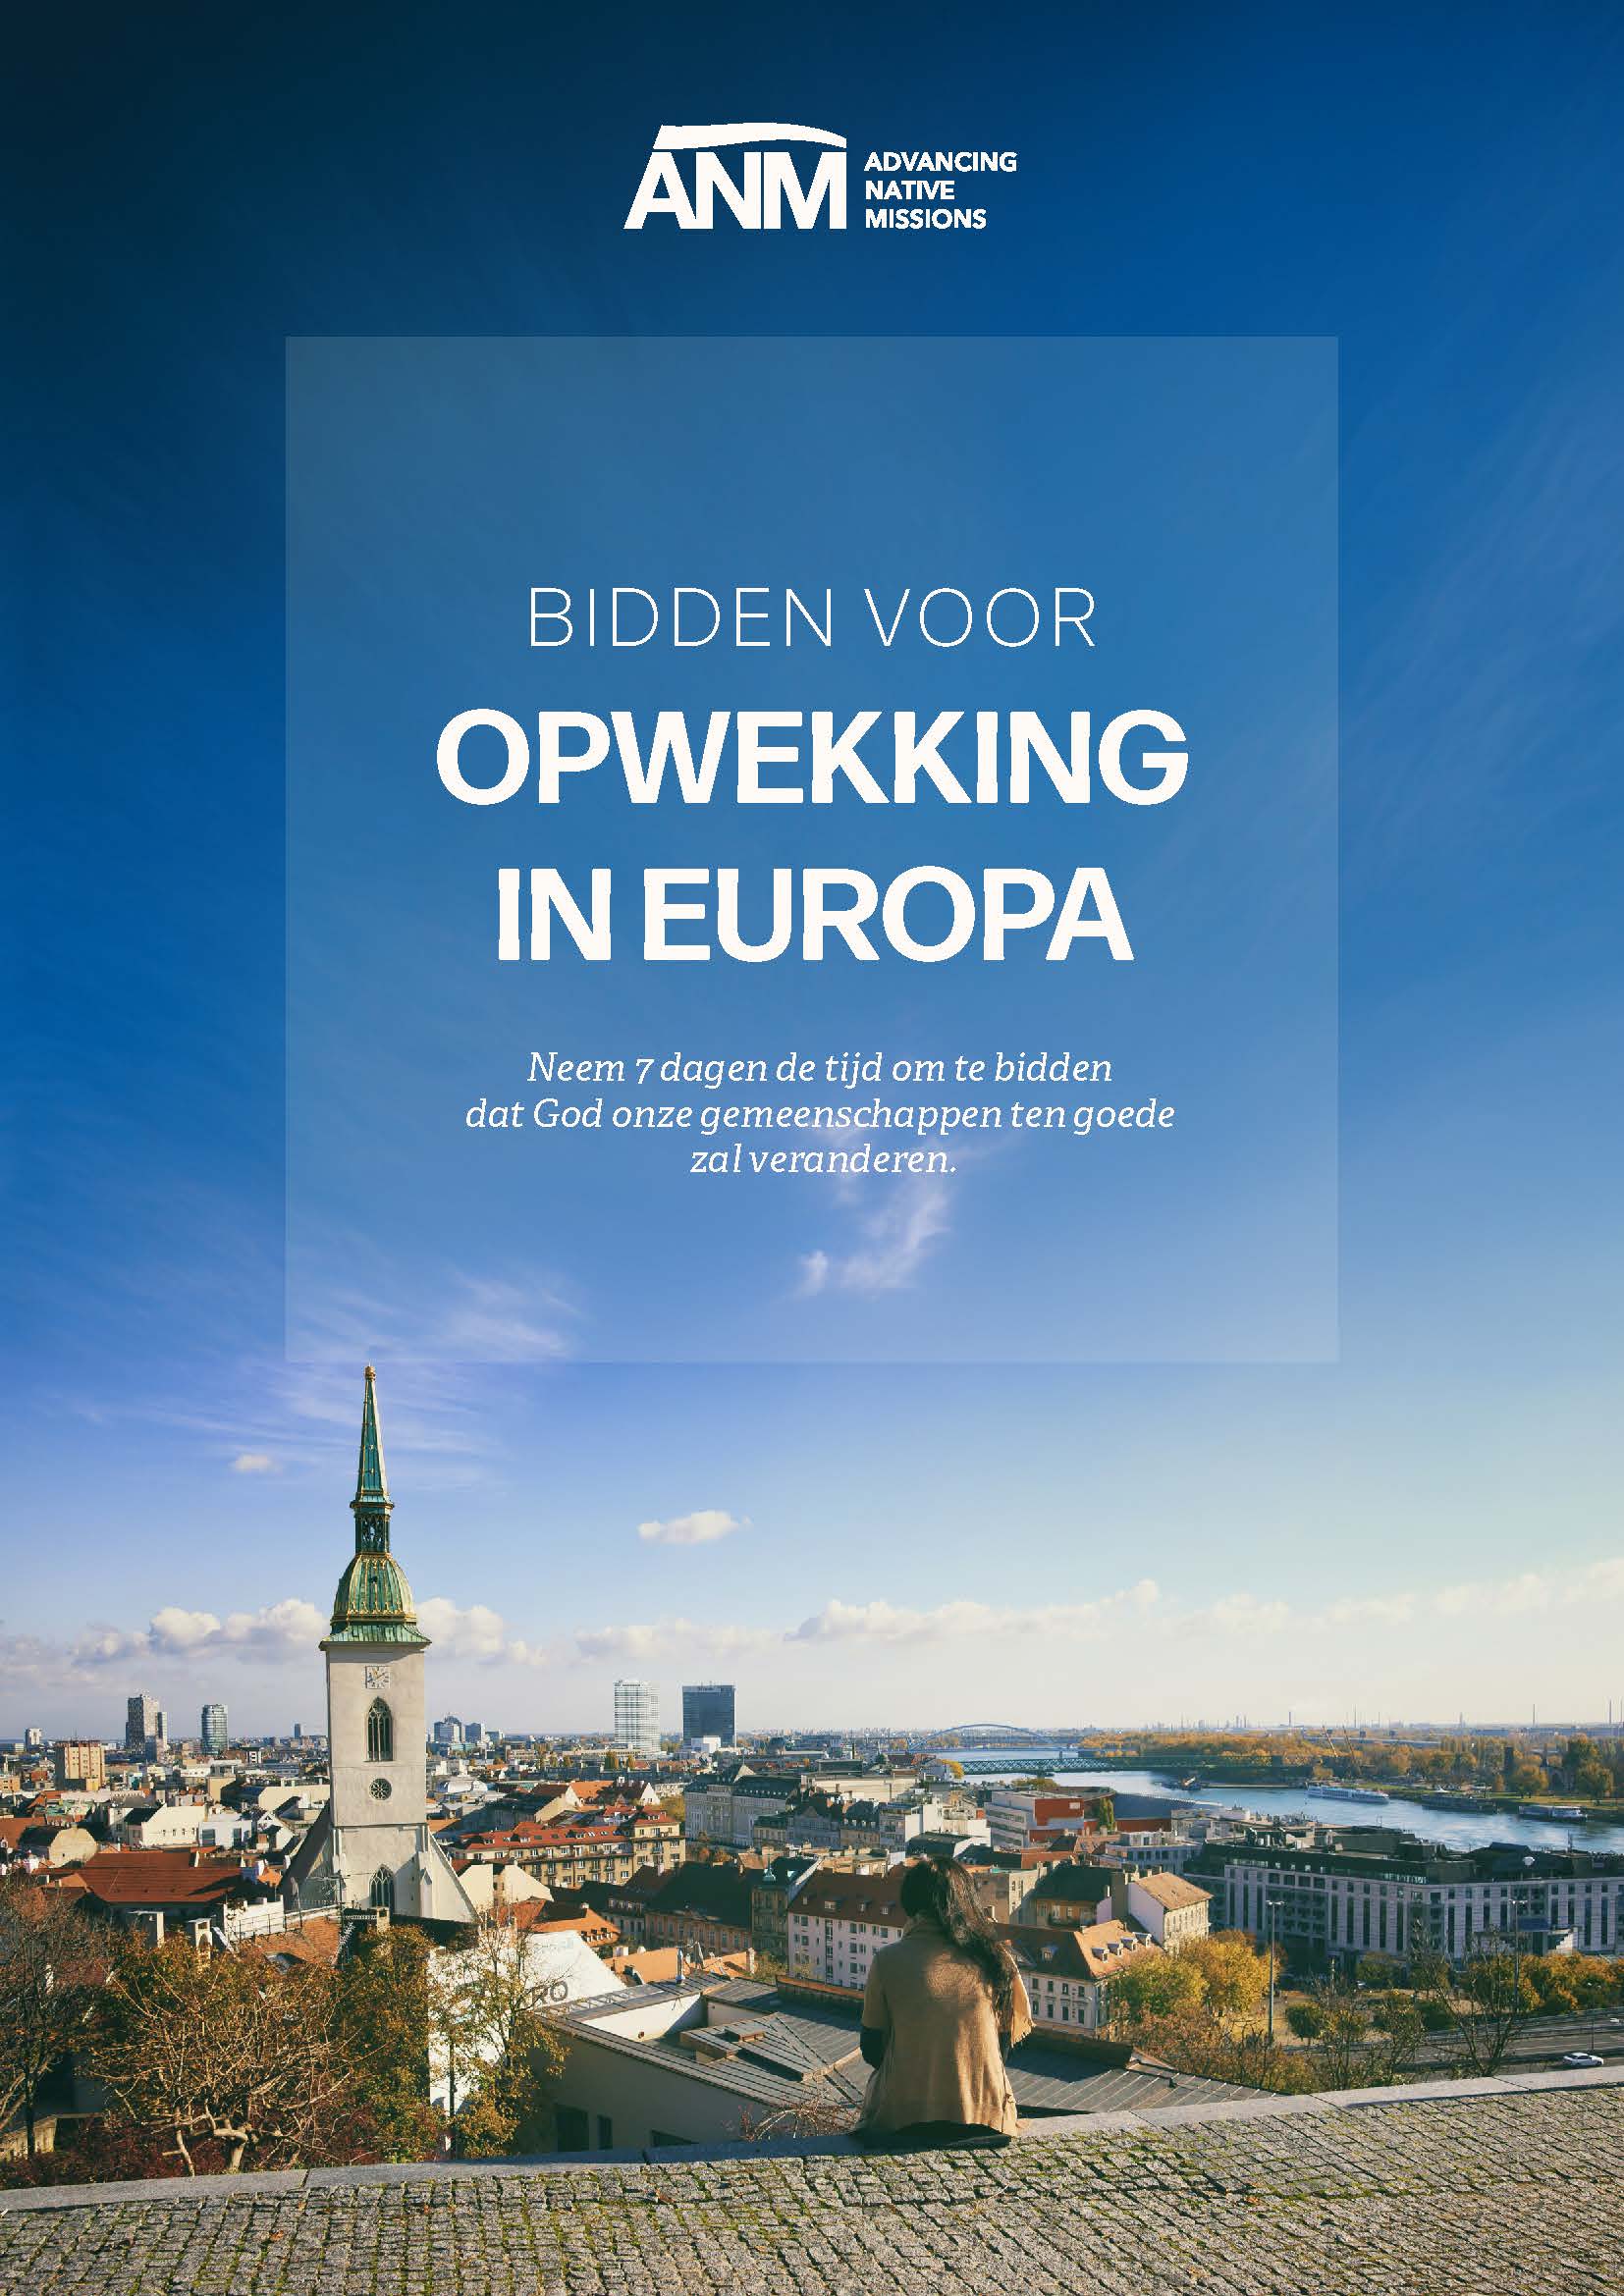 Cover image of bidden voor opwekking in europa (ANM)